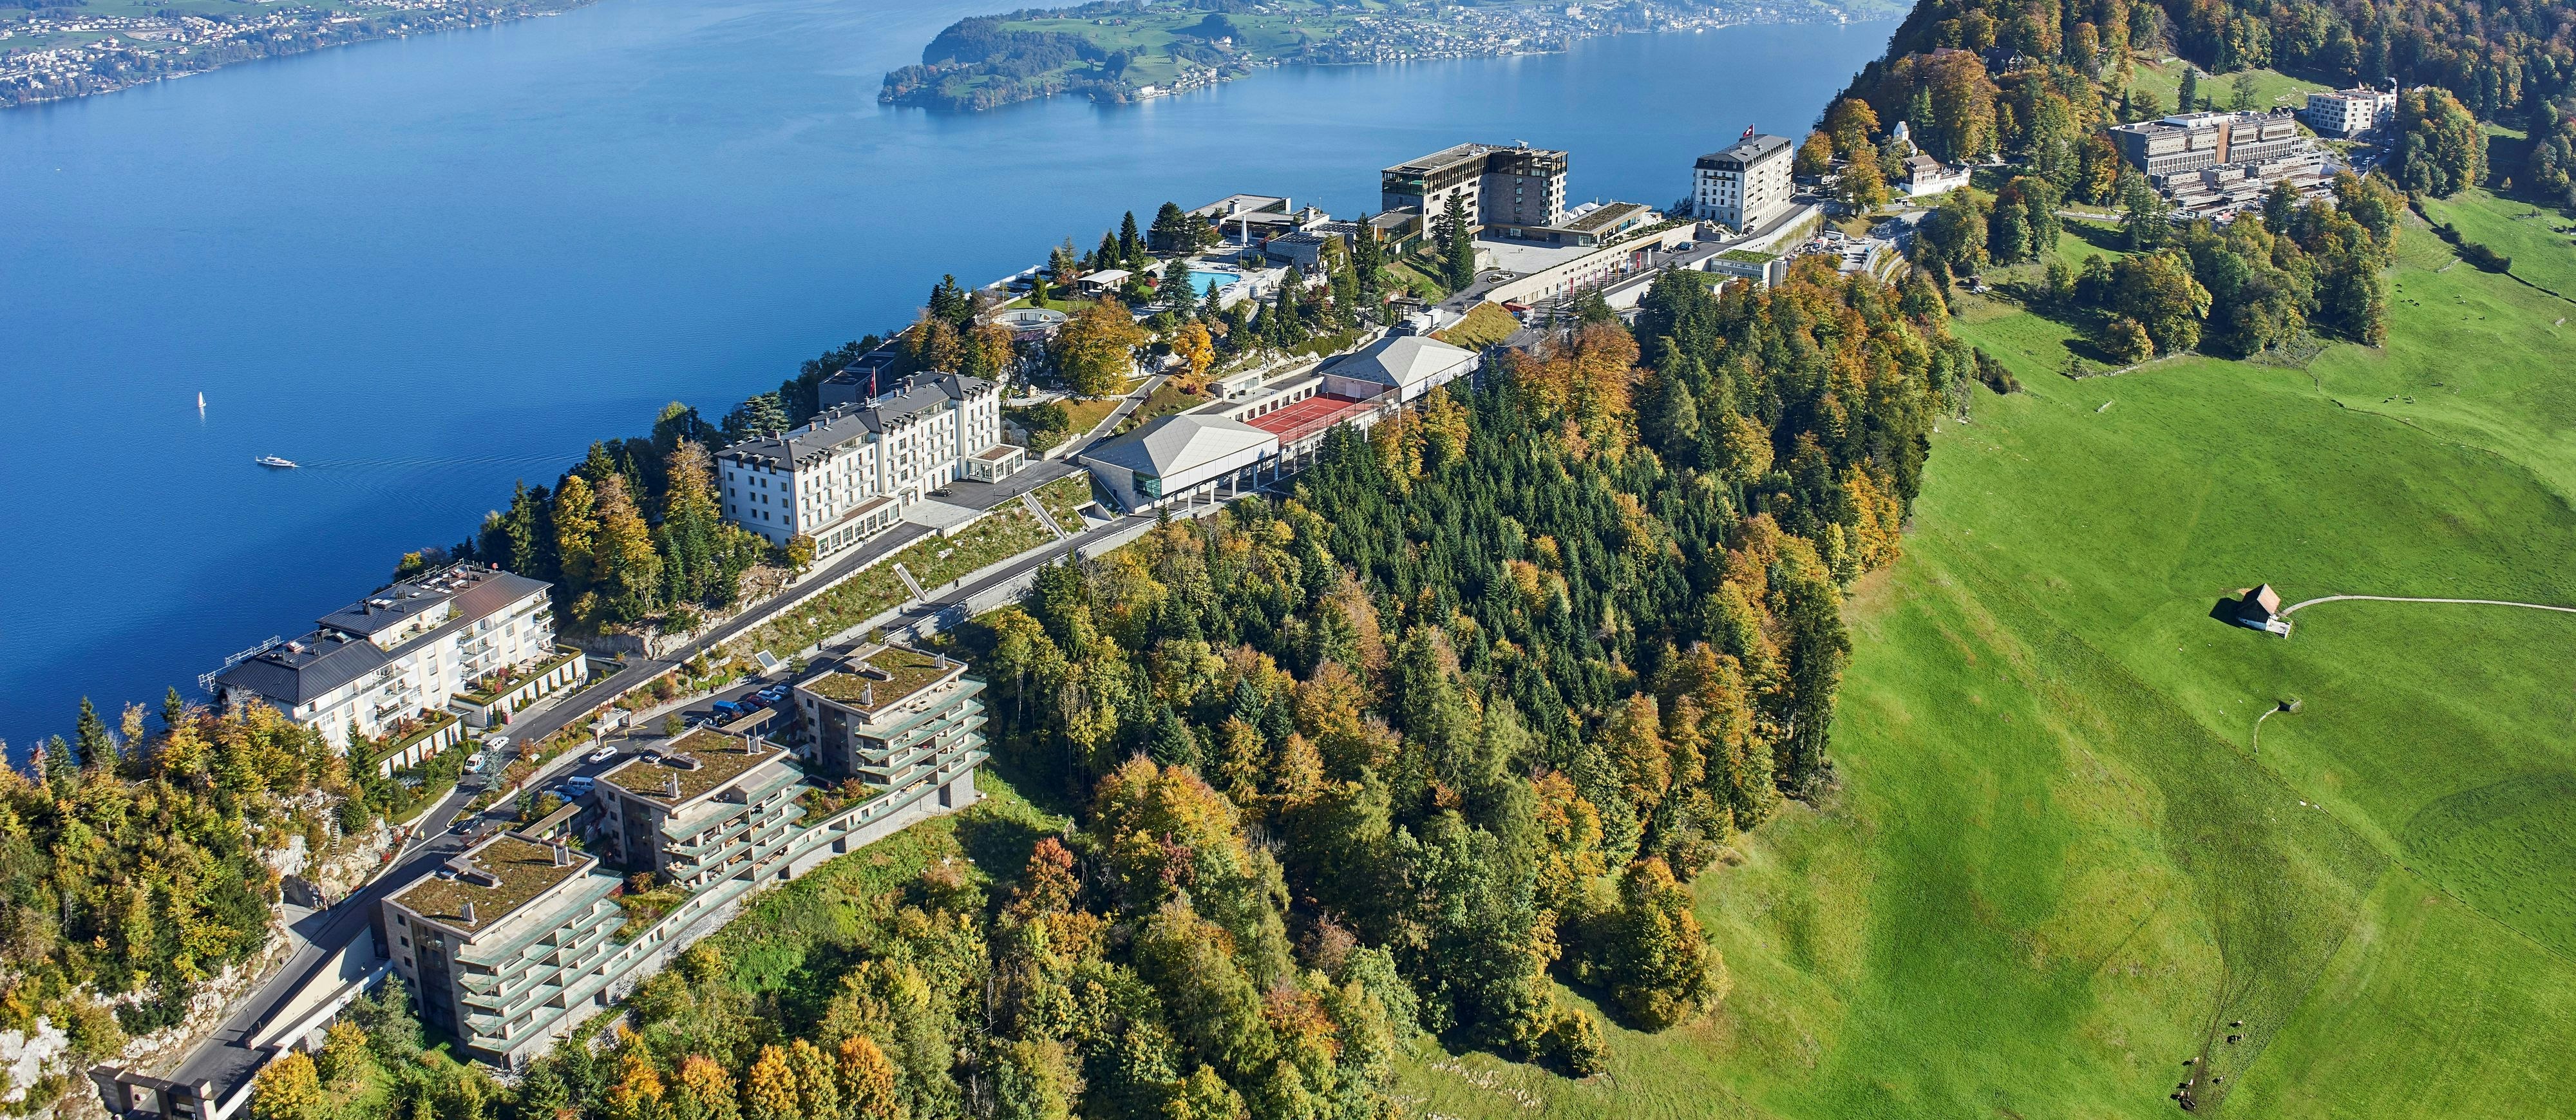 Blick auf den Tagungsort, das Schweizer Luxushotel Bürgenstock bei Luzern am Vierwaldstättersee